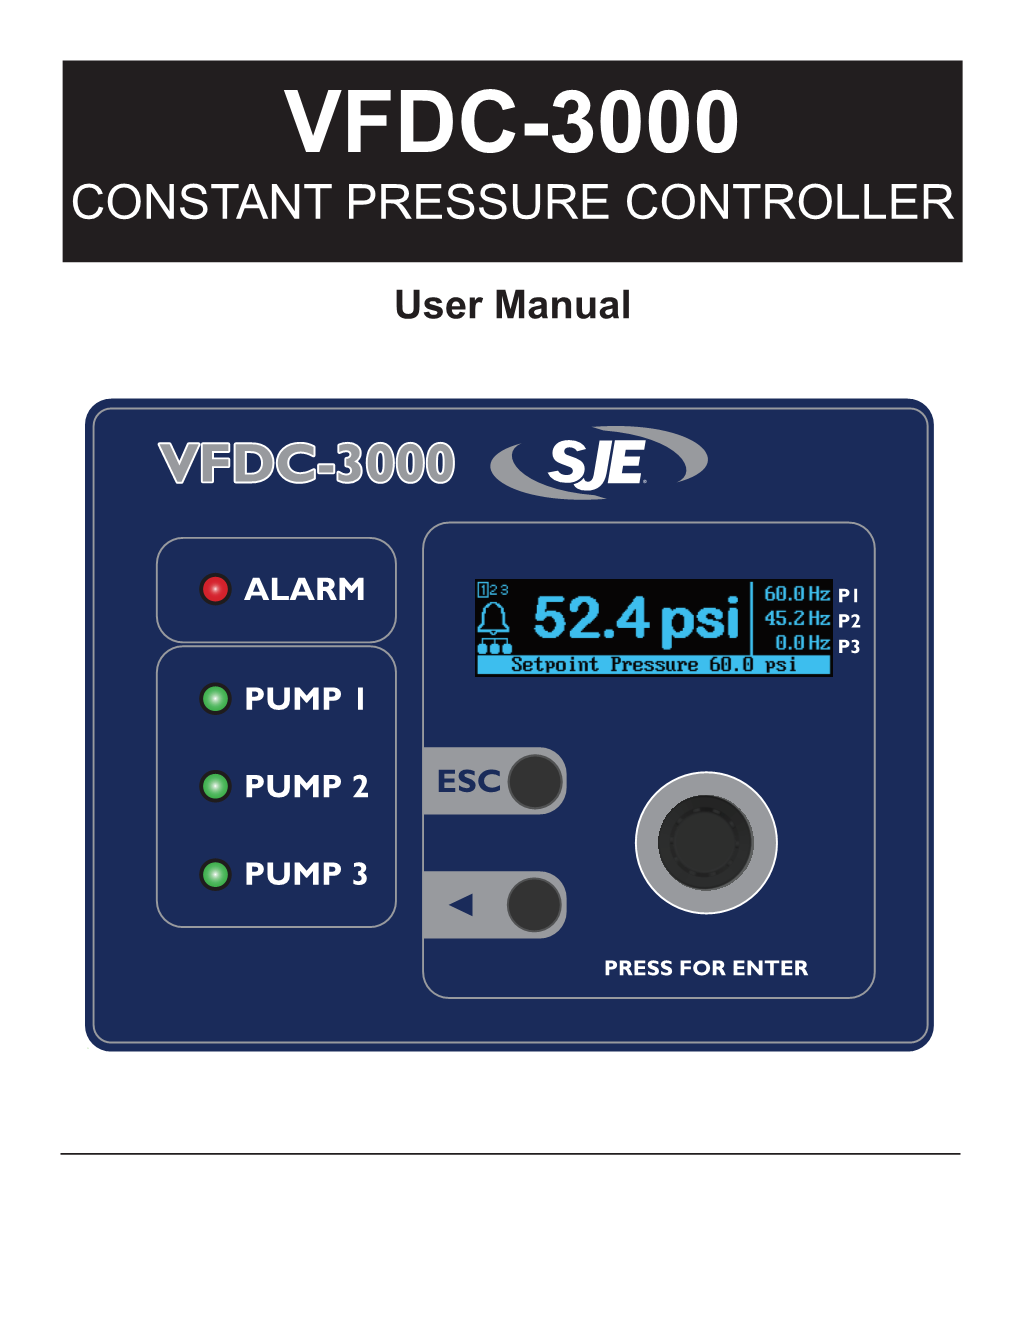 Vfdc-3000 Constant Pressure Controller